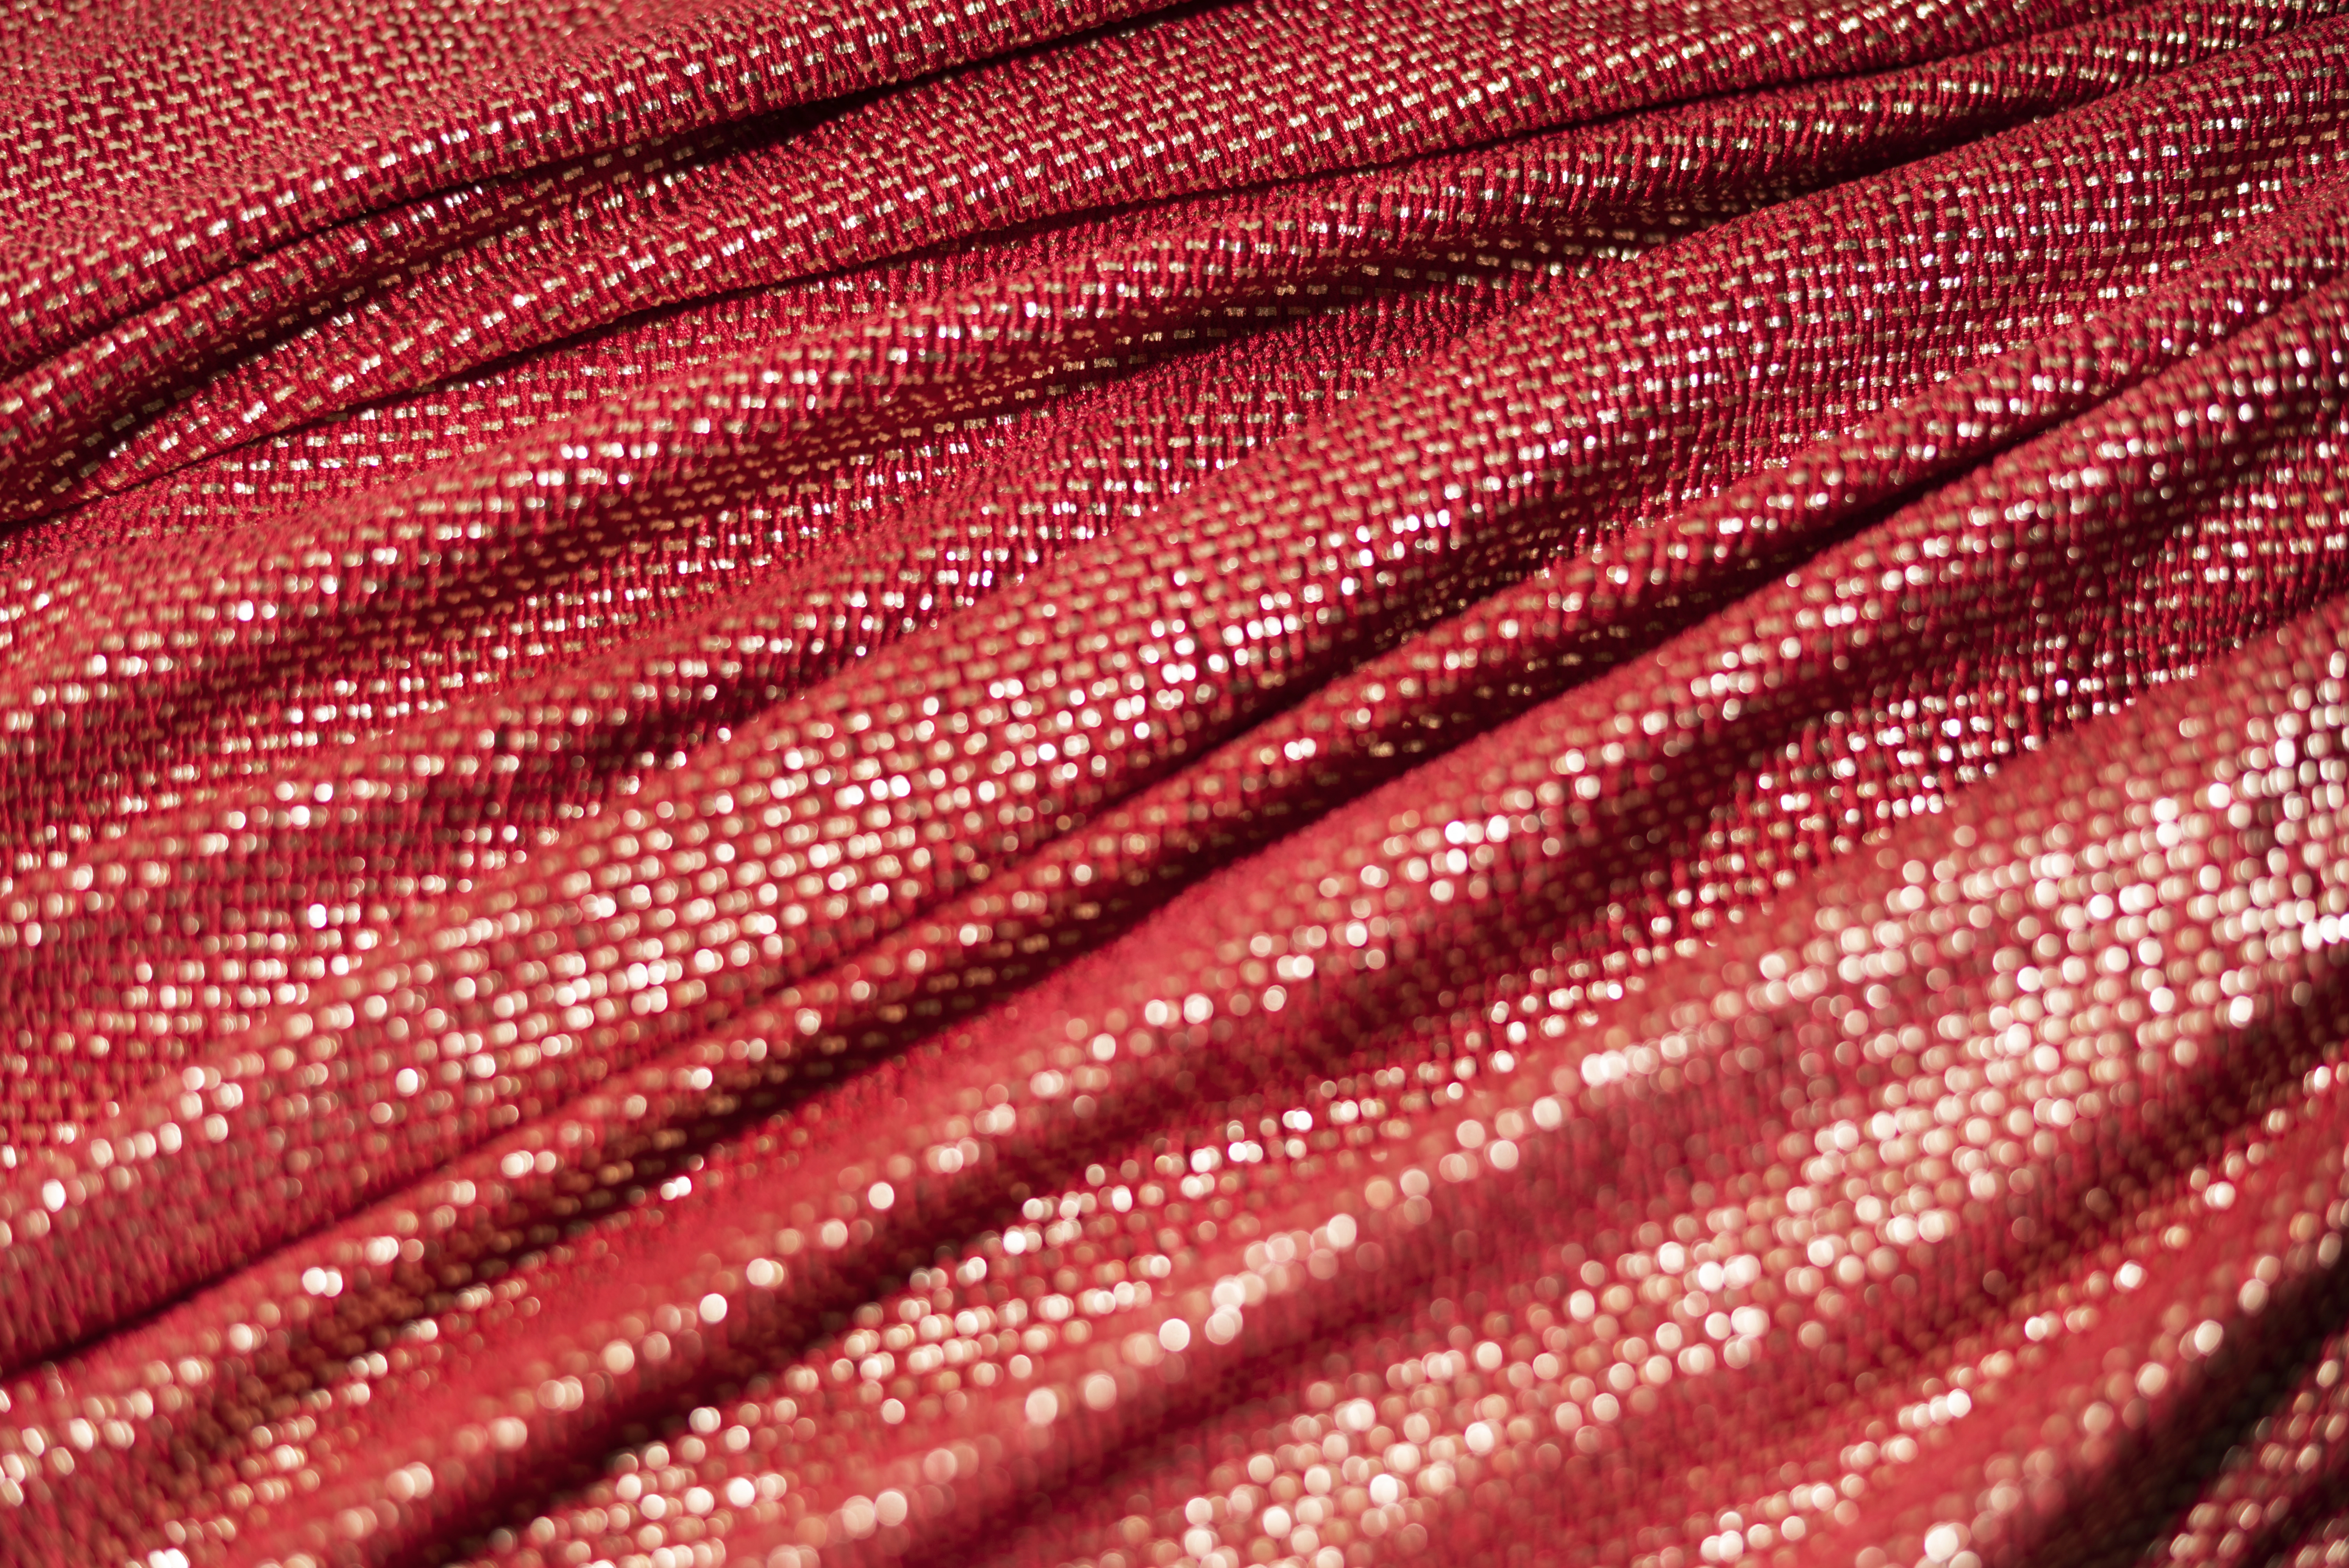 Tecido vermelho com fios de lurex em dourado.